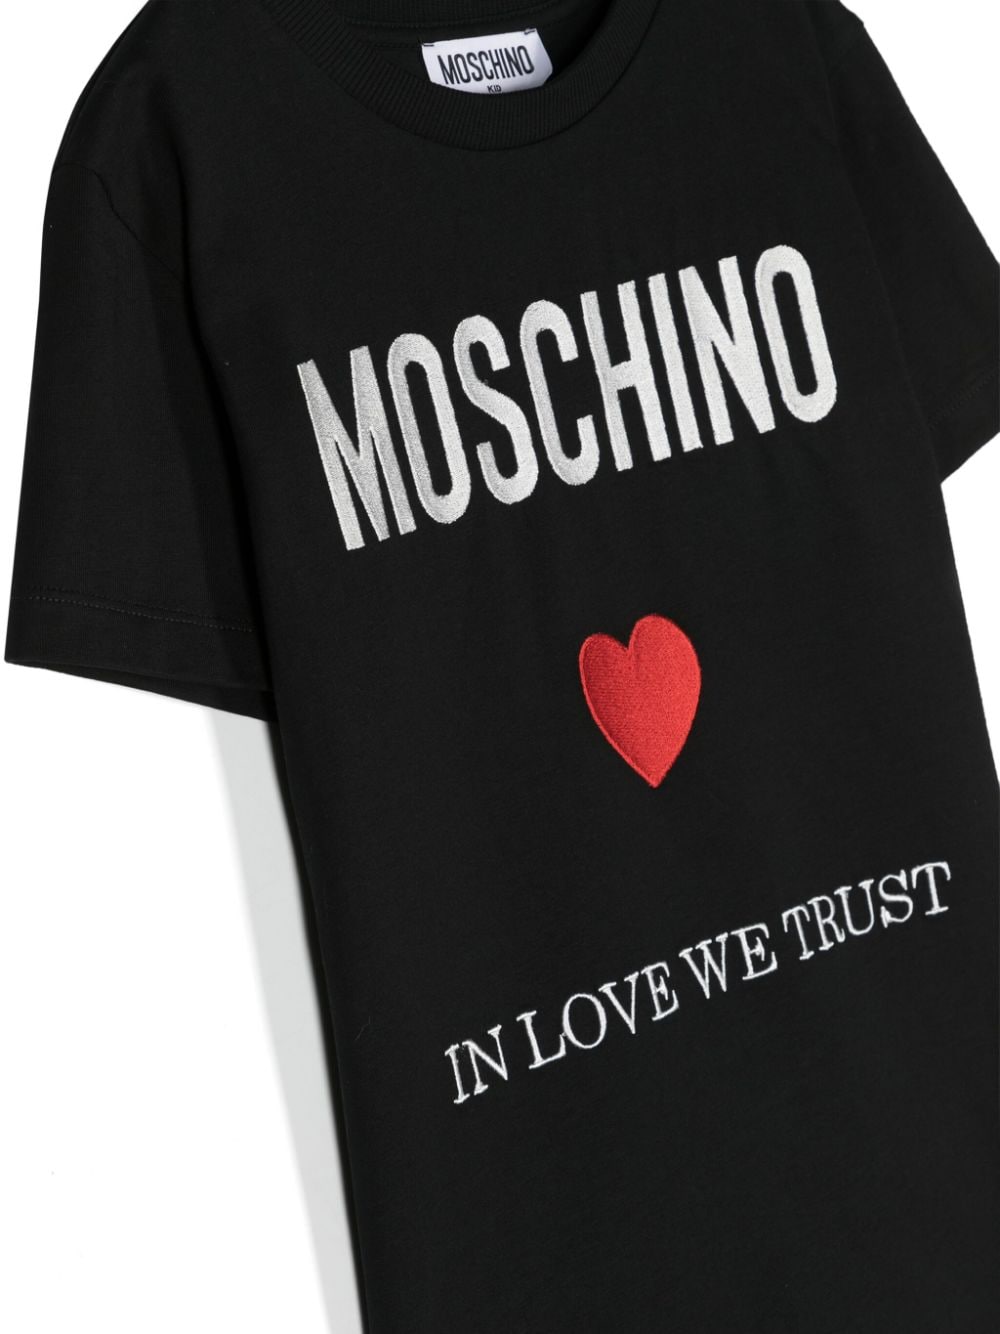 Moschino Kids t-shirt con ricamo